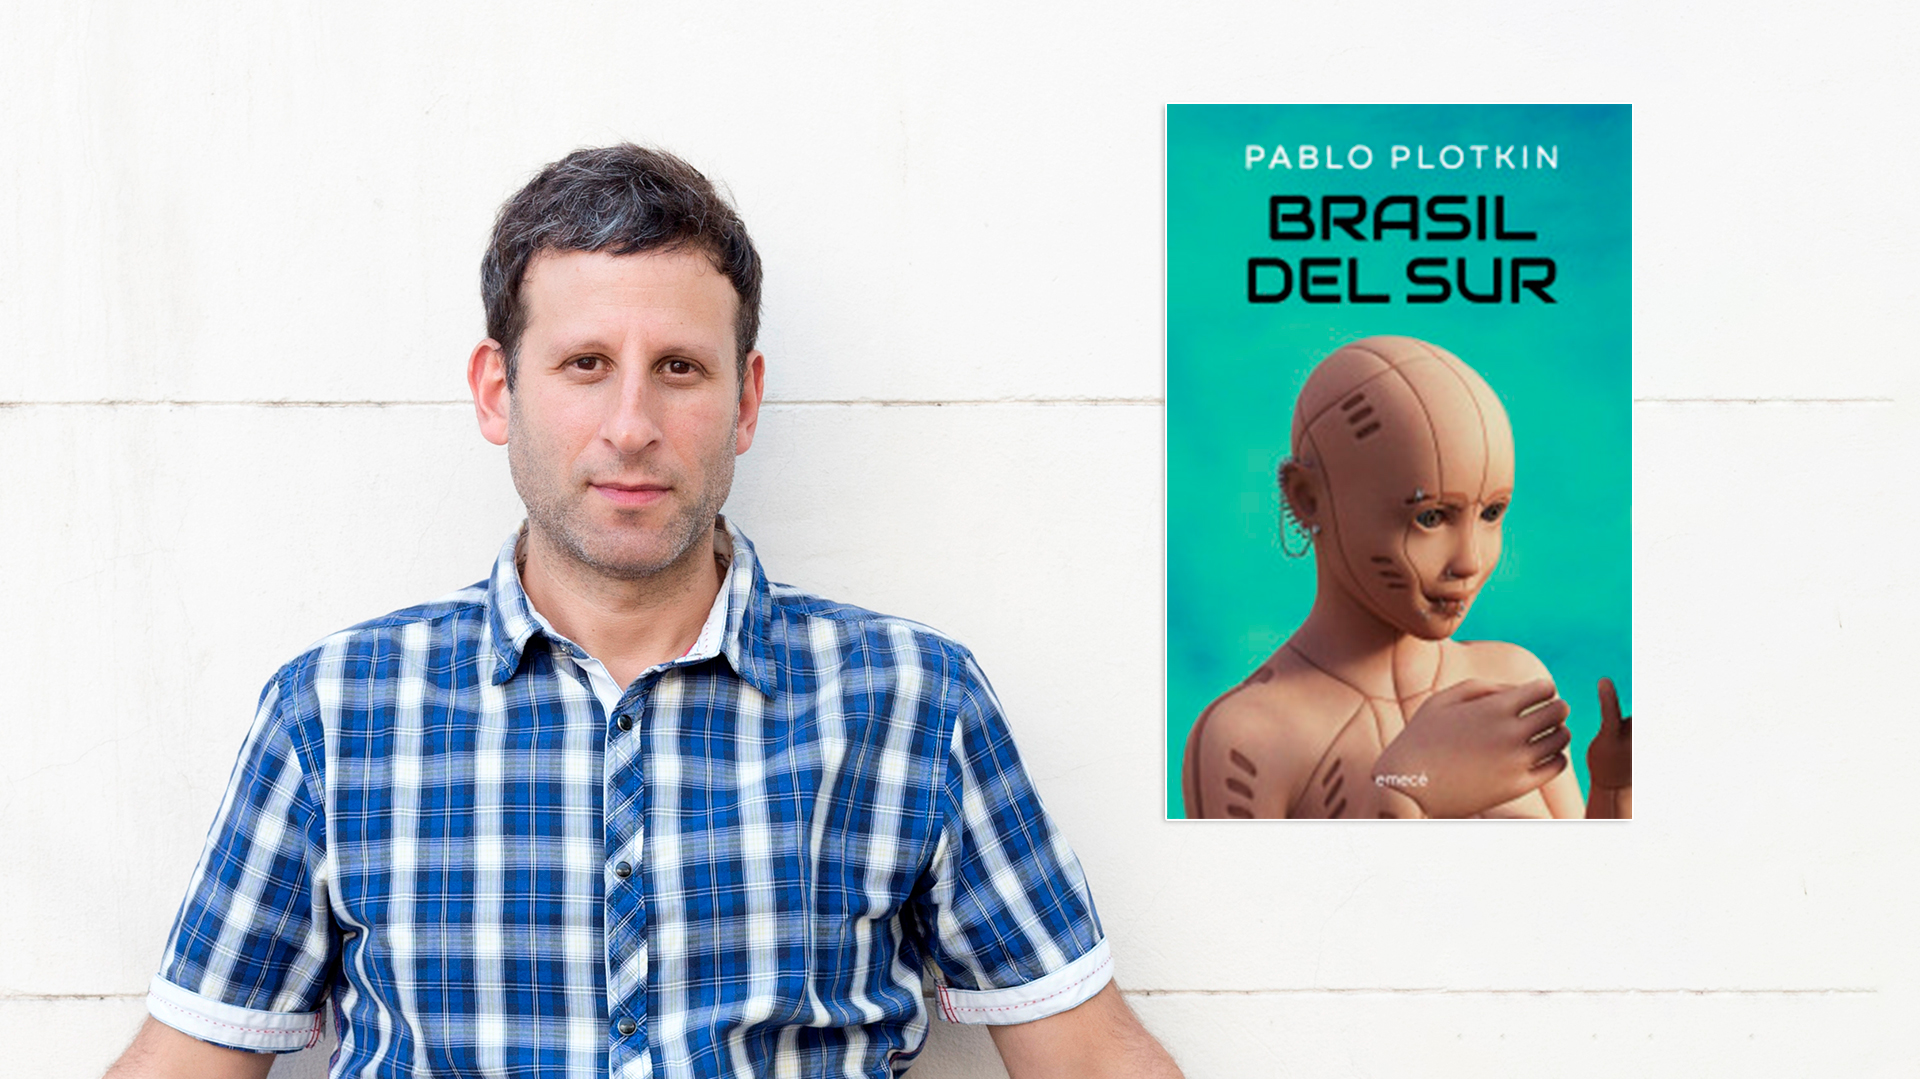 Gobiernos totalitarios, inteligencia artificial y dilemas éticos: cómo es “Brasil del Sur”, la nueva novela de Pablo Plotkin